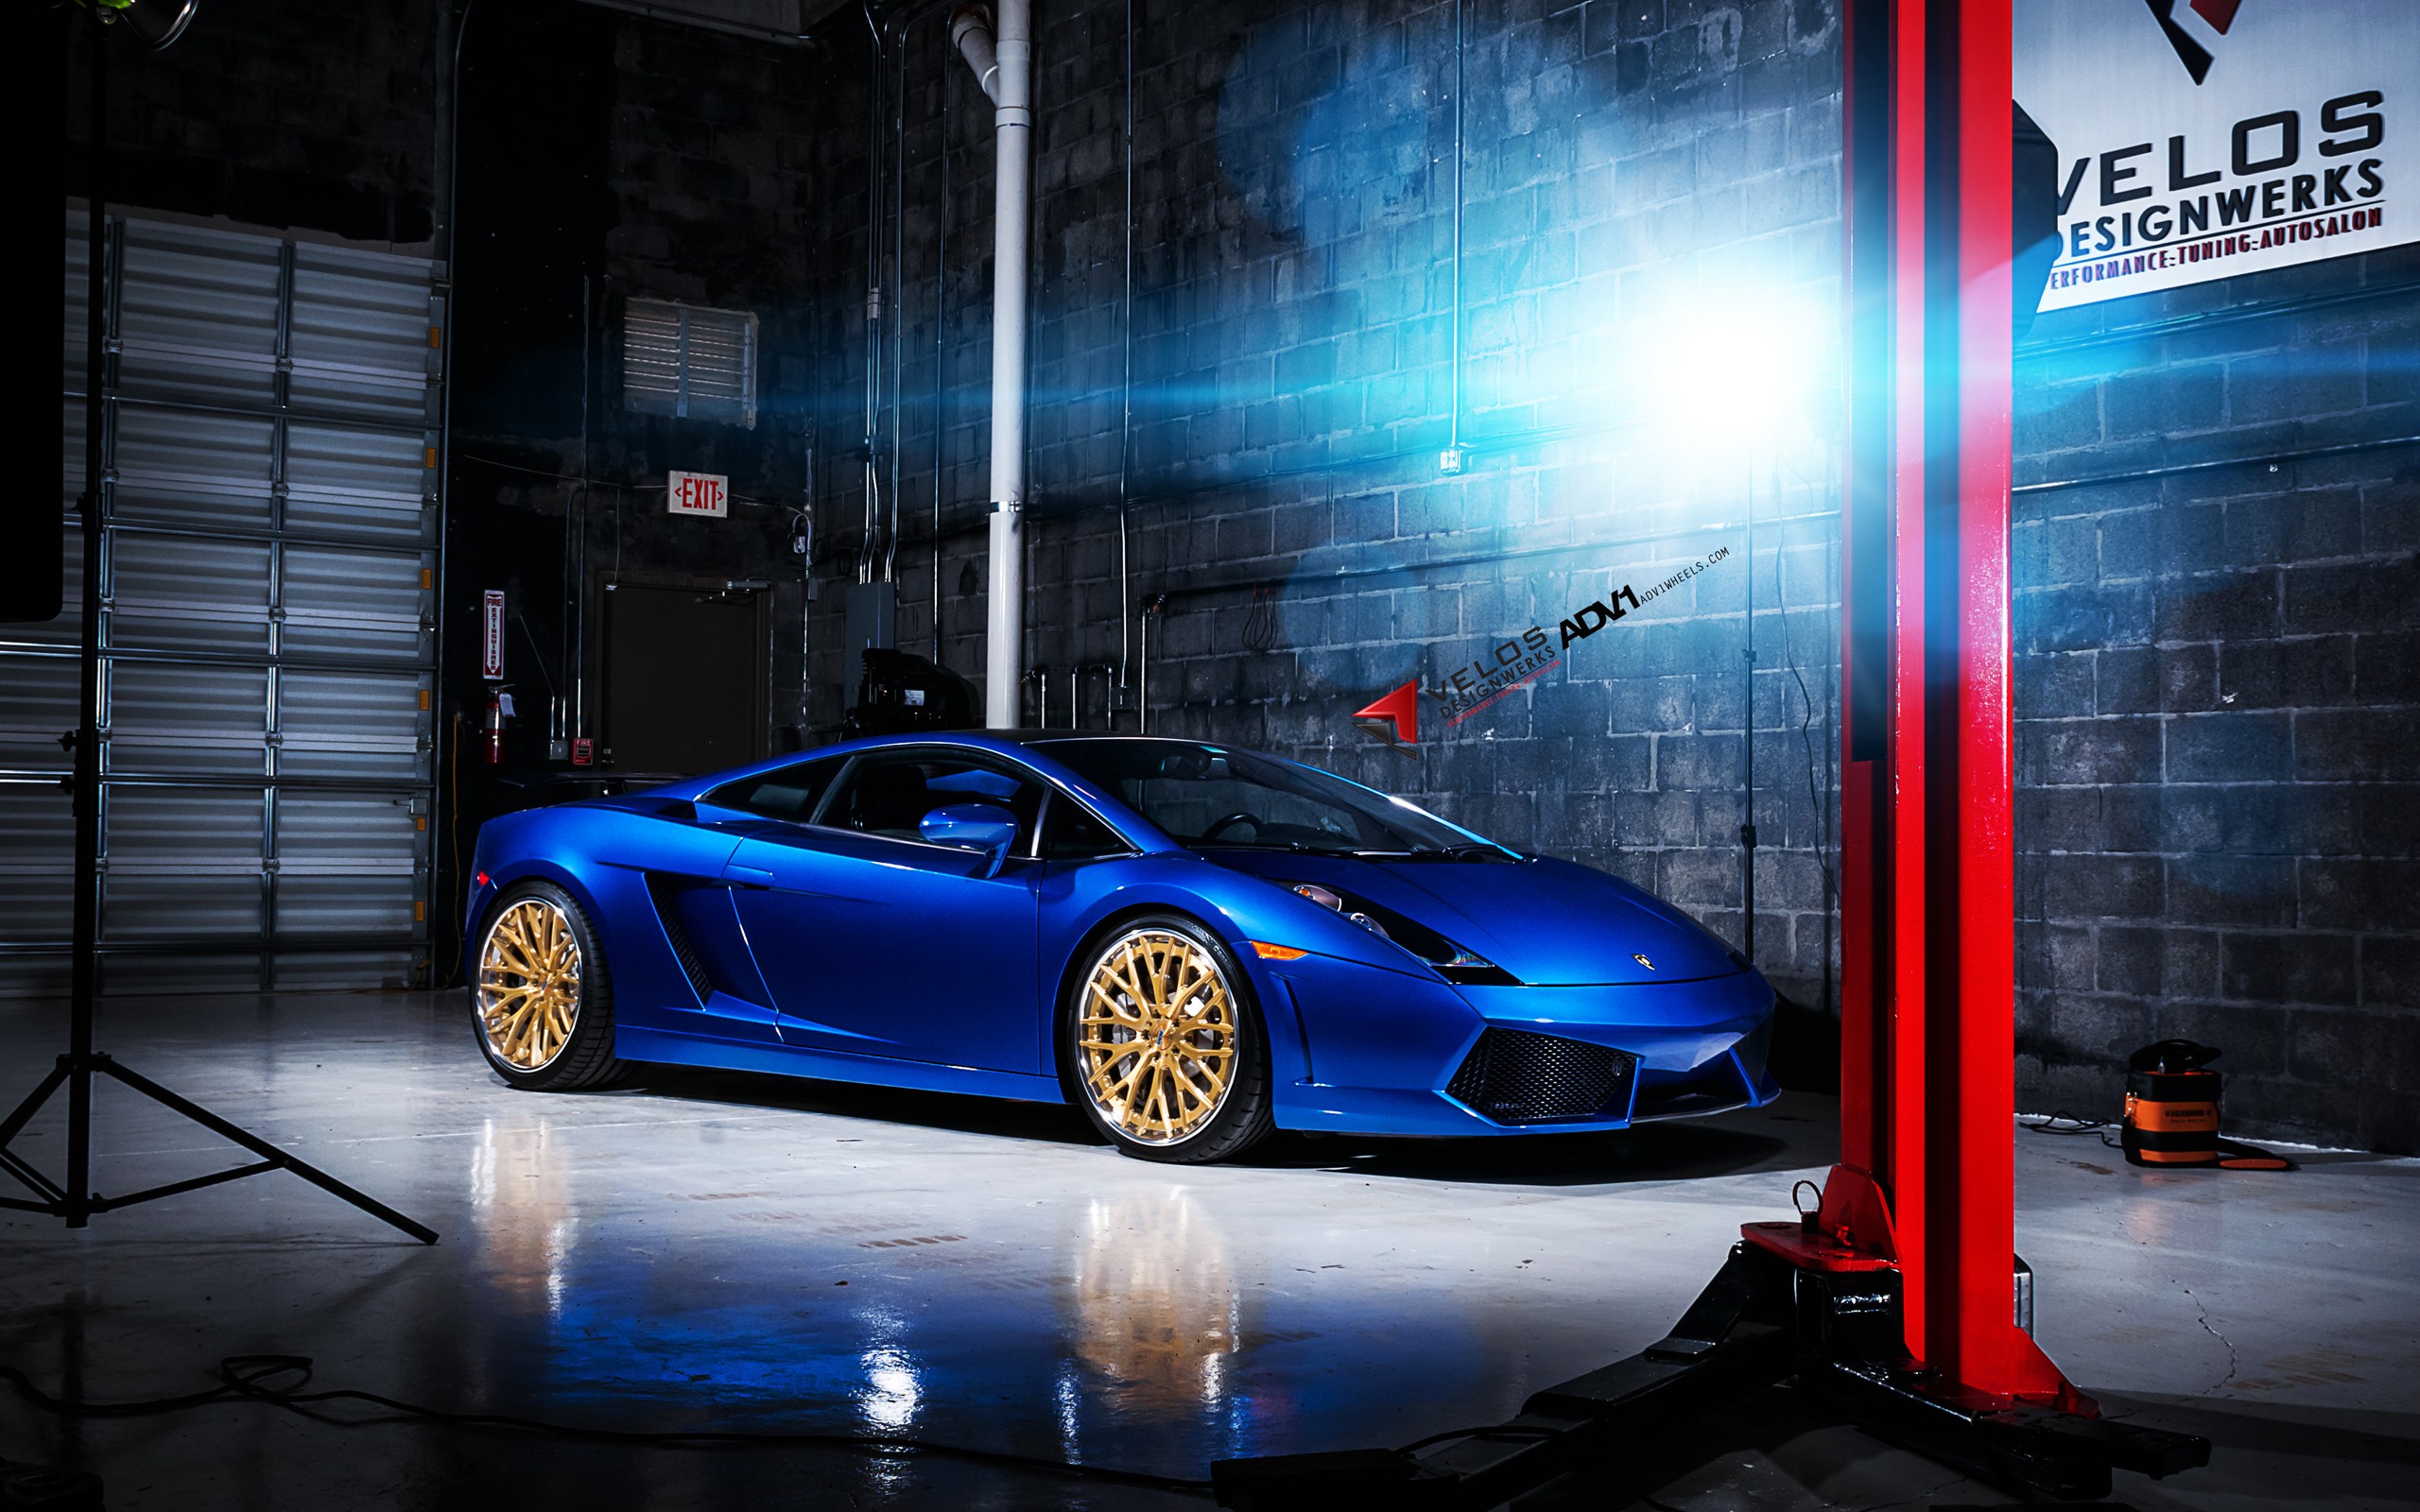 General 2560x1600 car Lamborghini vehicle blue cars Lamborghini Gallardo italian cars Volkswagen Group